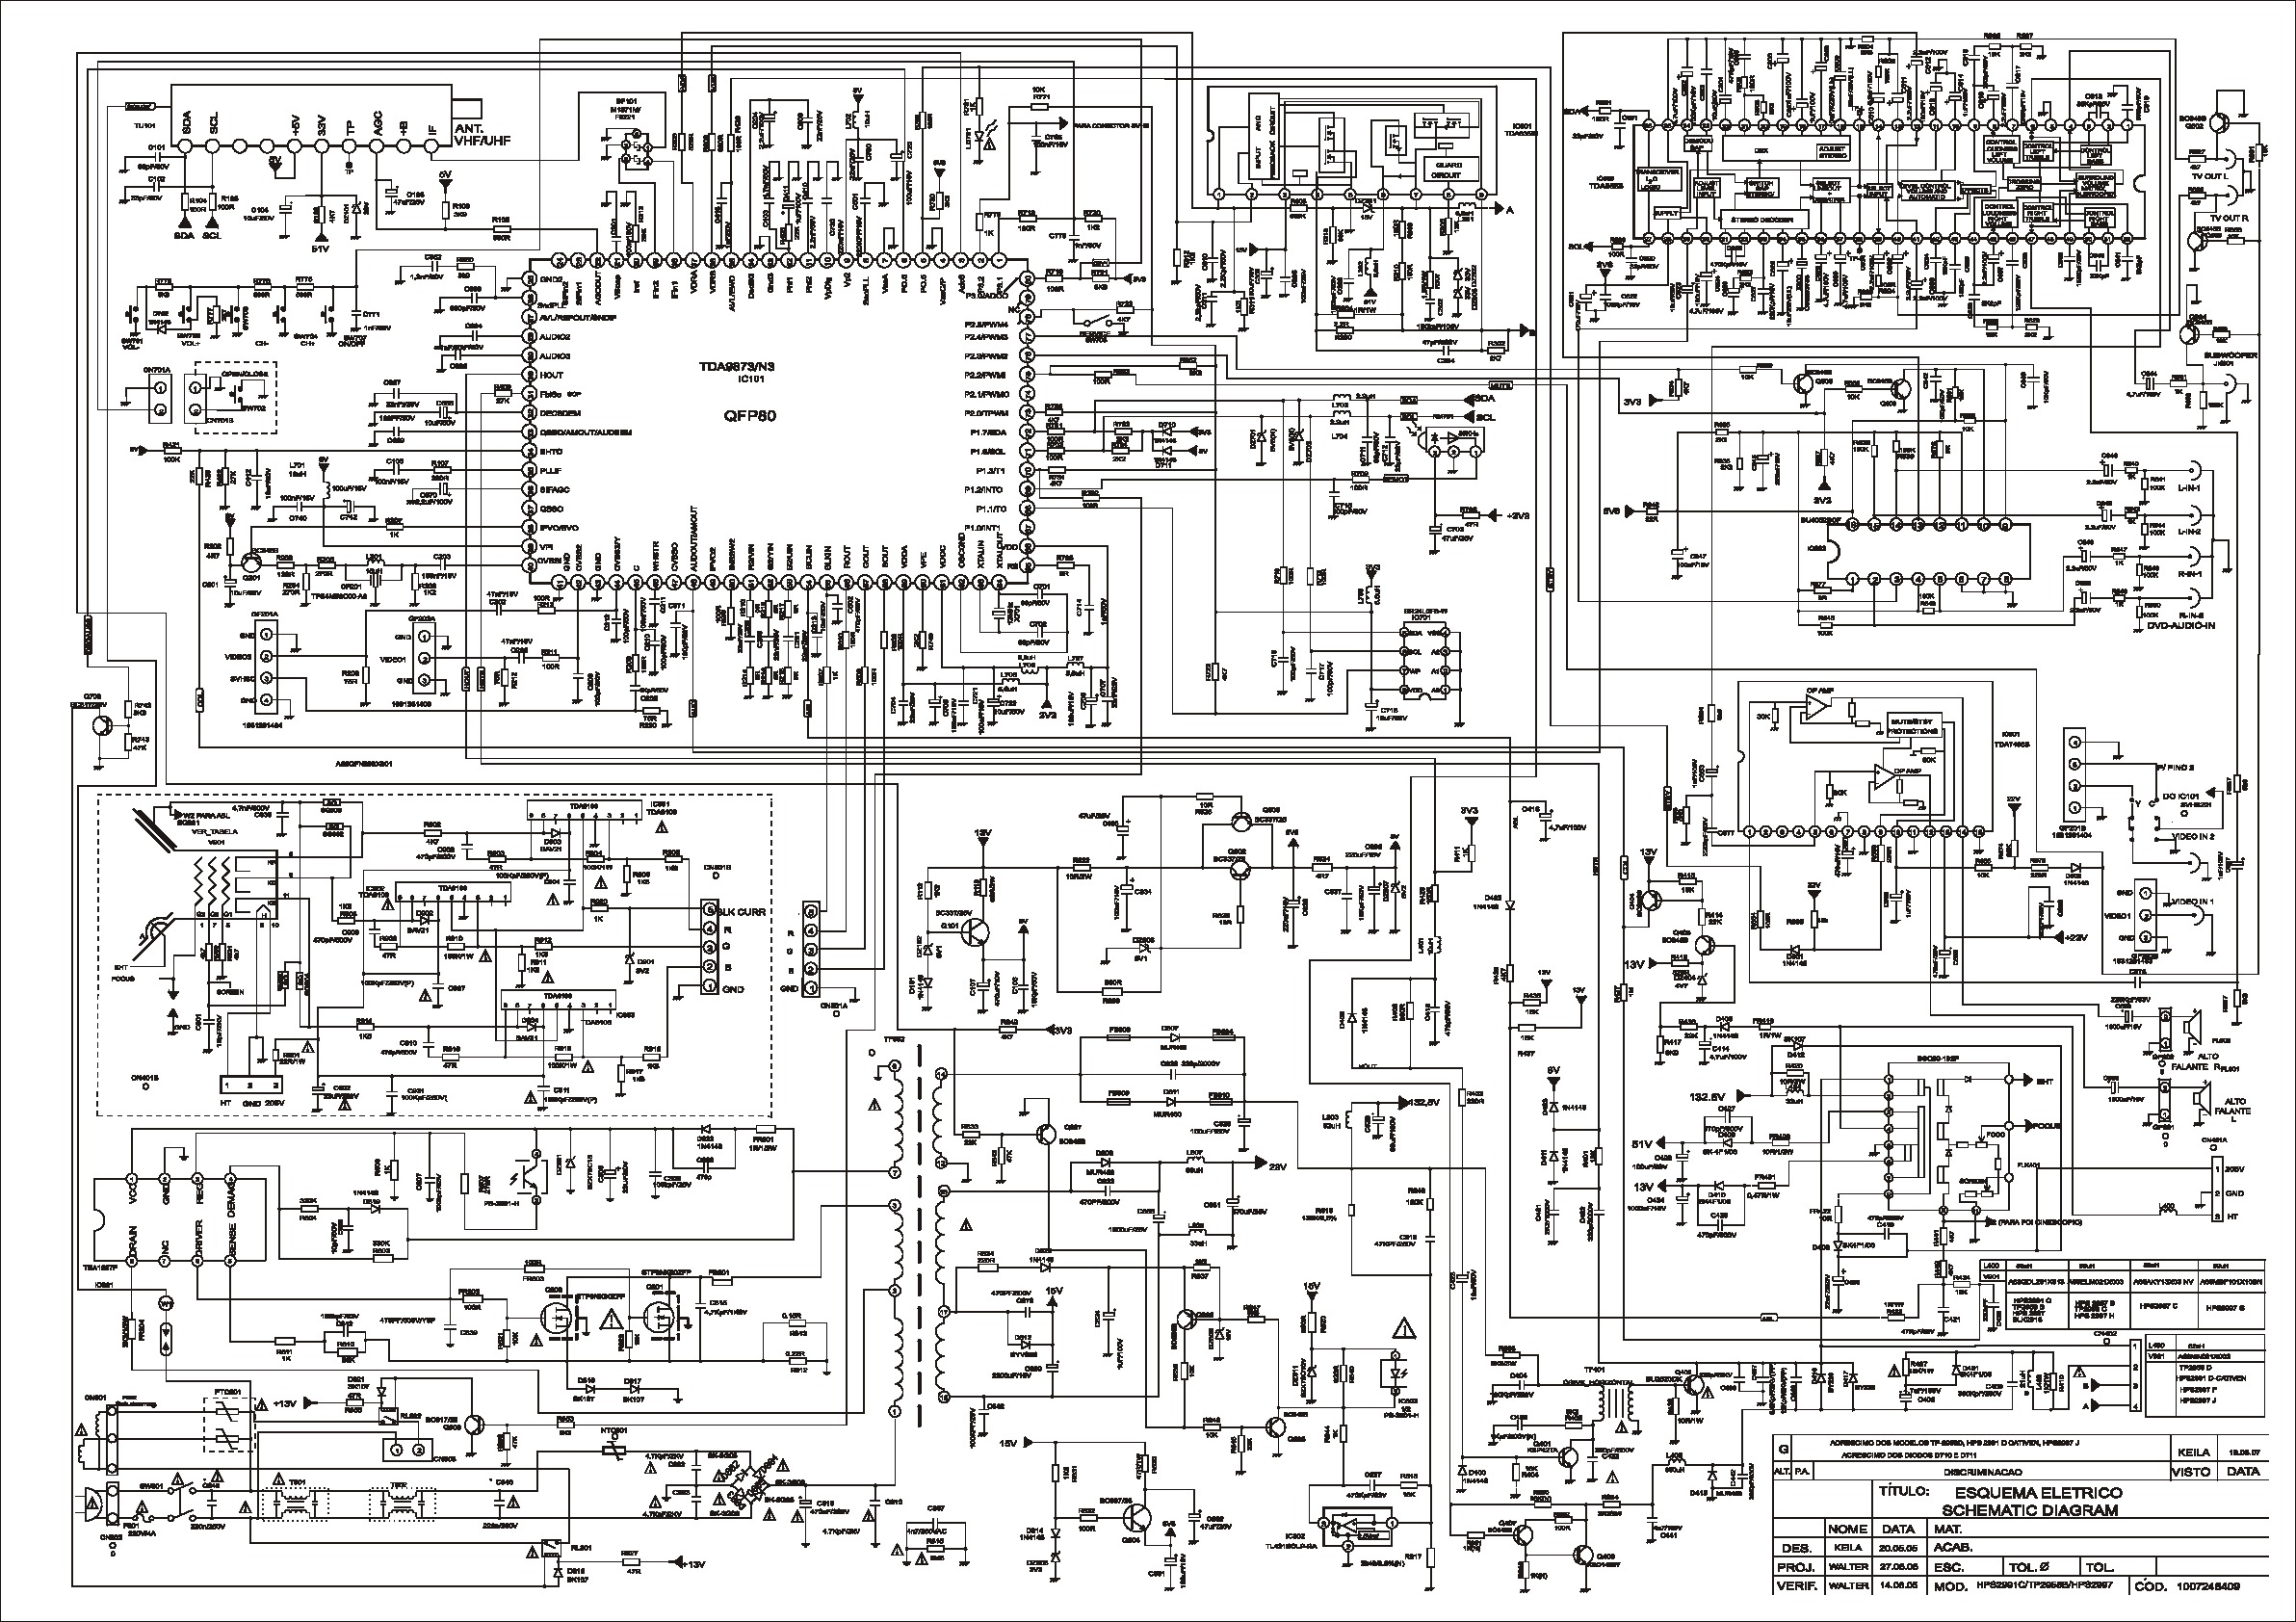  – Diagramas electronicos y diagramas eléctricos – Página  11842